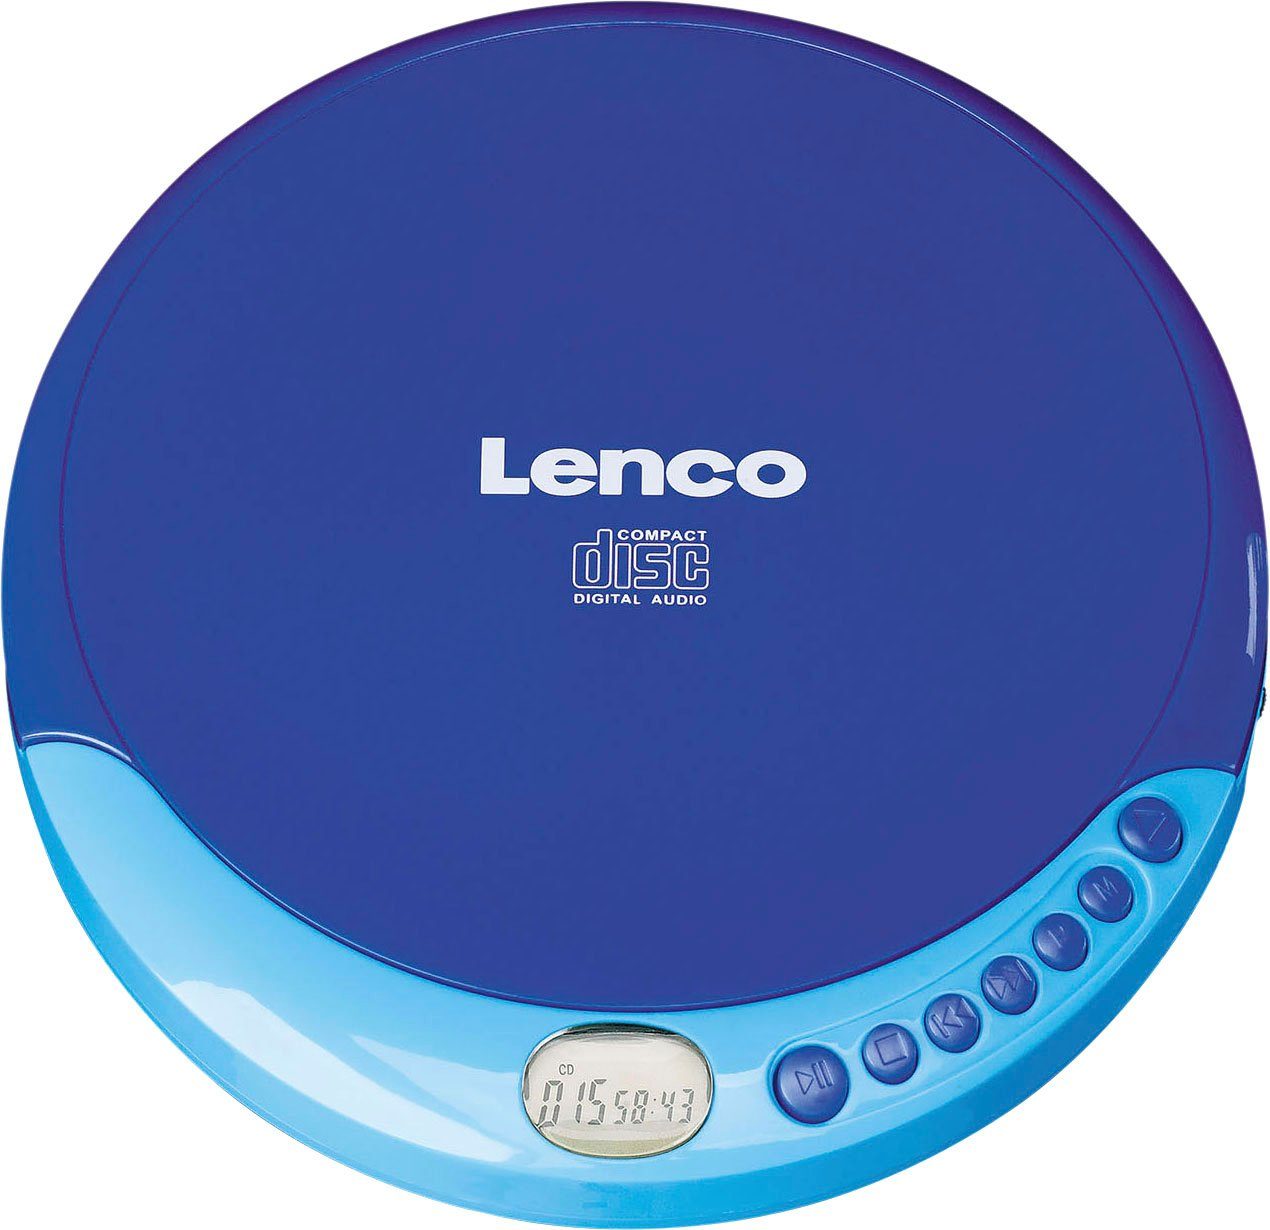 blau CD-011 Lenco CD-Player